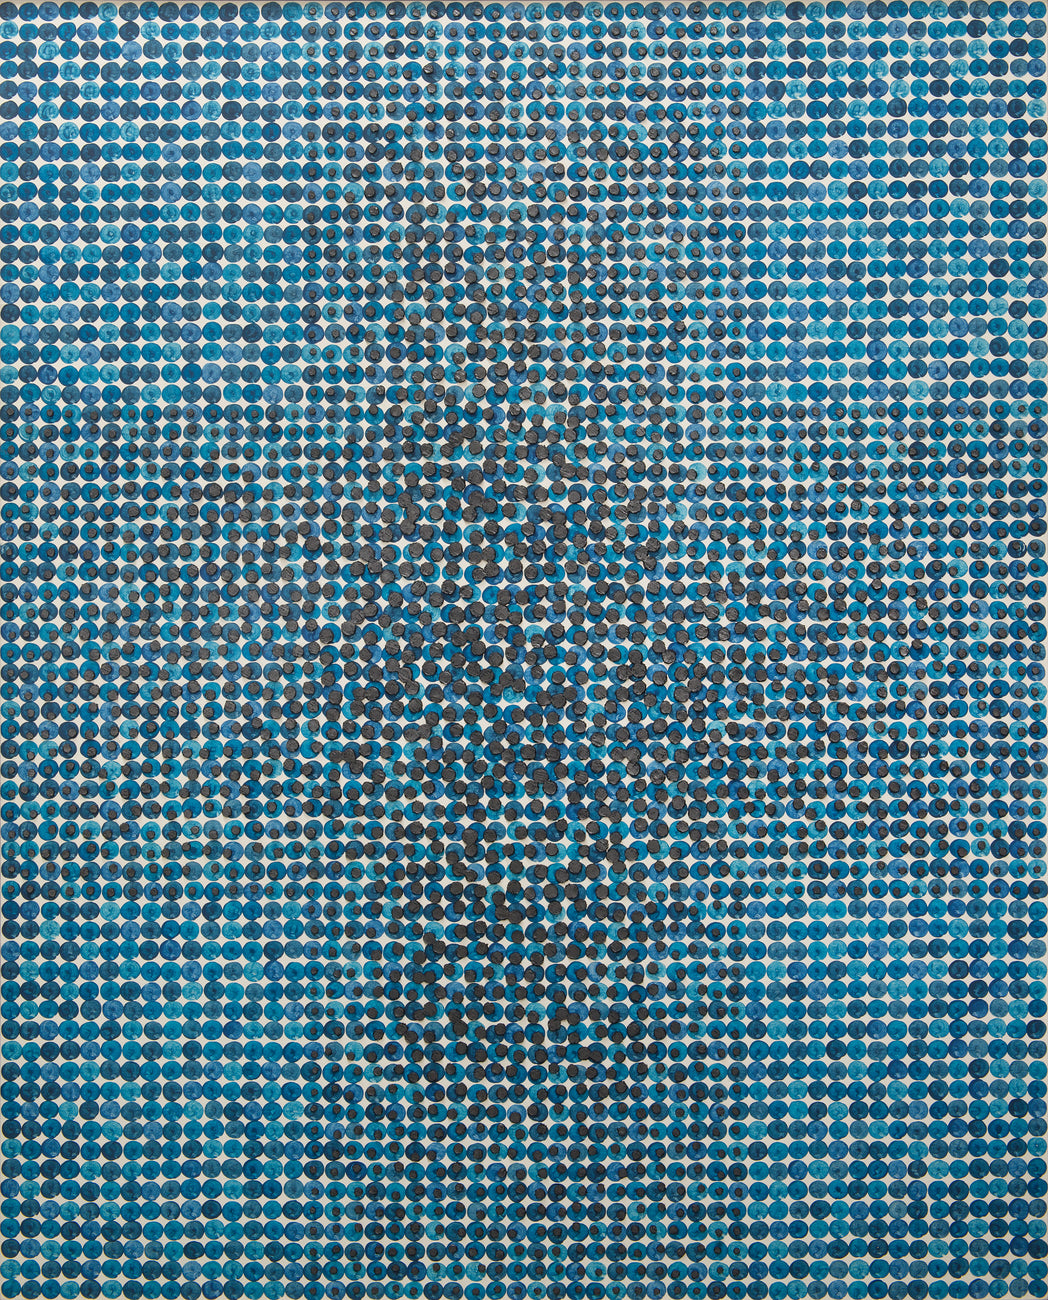 Pile up & Rub - Feeling (11-01), SOONIK KWON, 2021Mixed media on canvas, frame162.2 × 130.3 cm